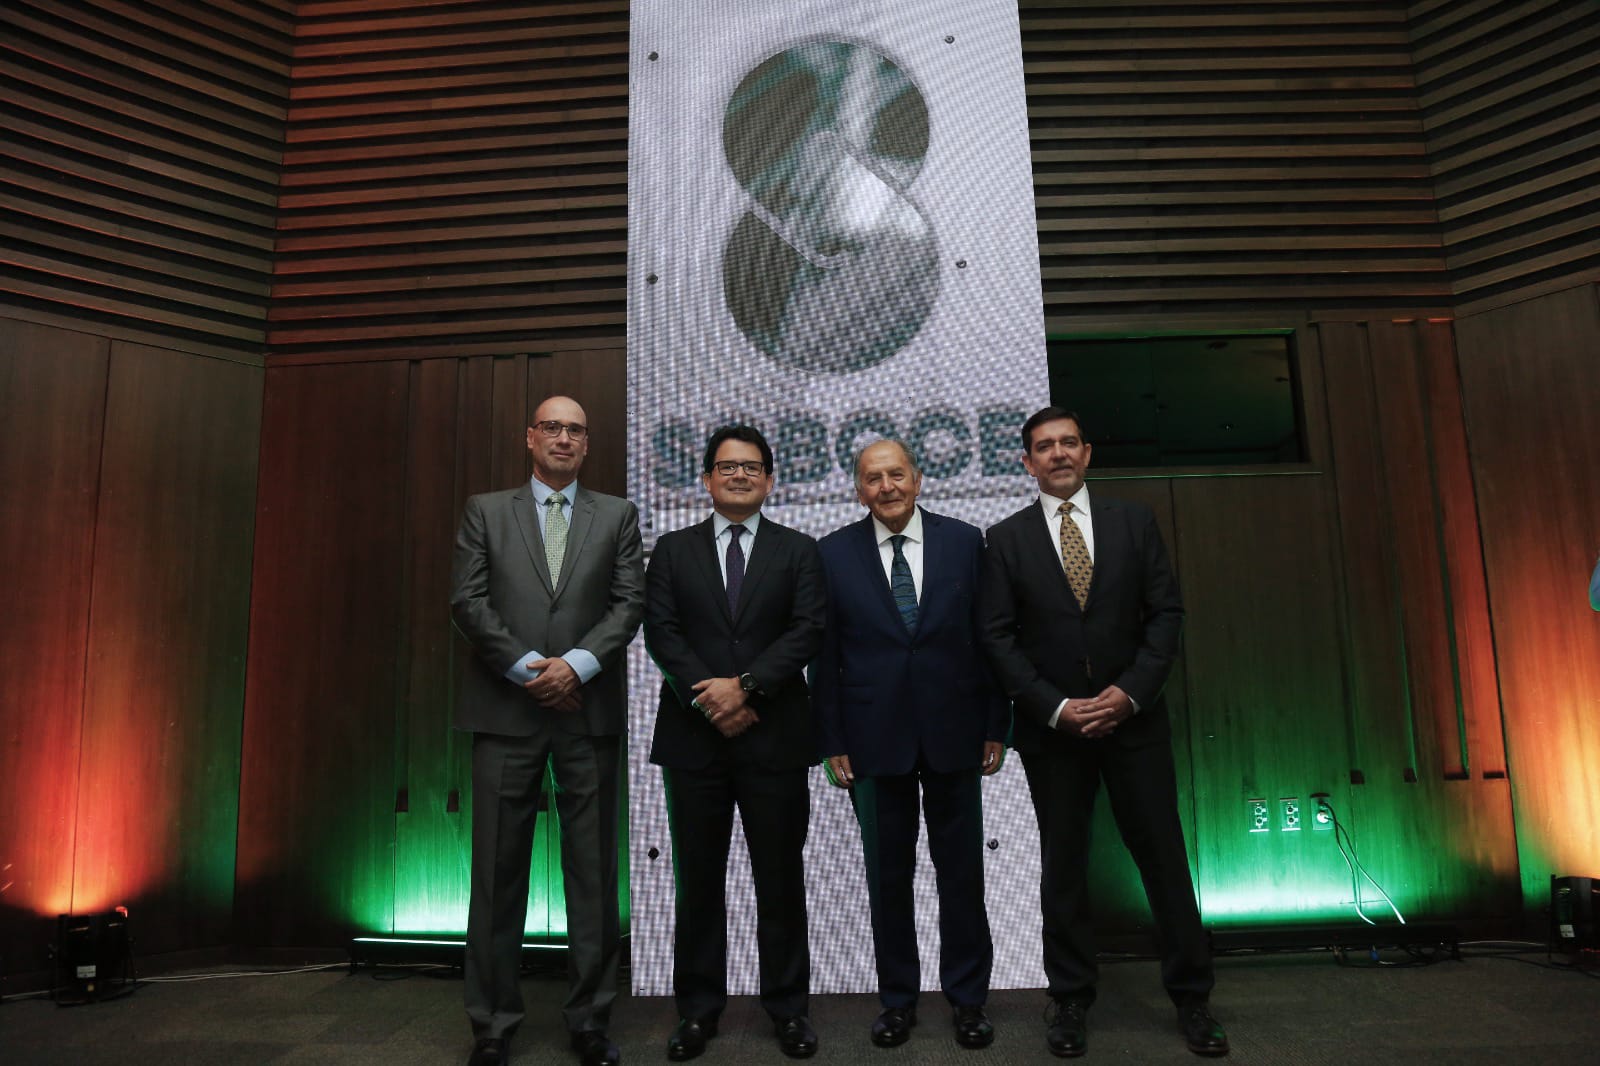 SOBOCE presenta su nueva imagen corporativa alineada a la sostenibilidad y la innovación